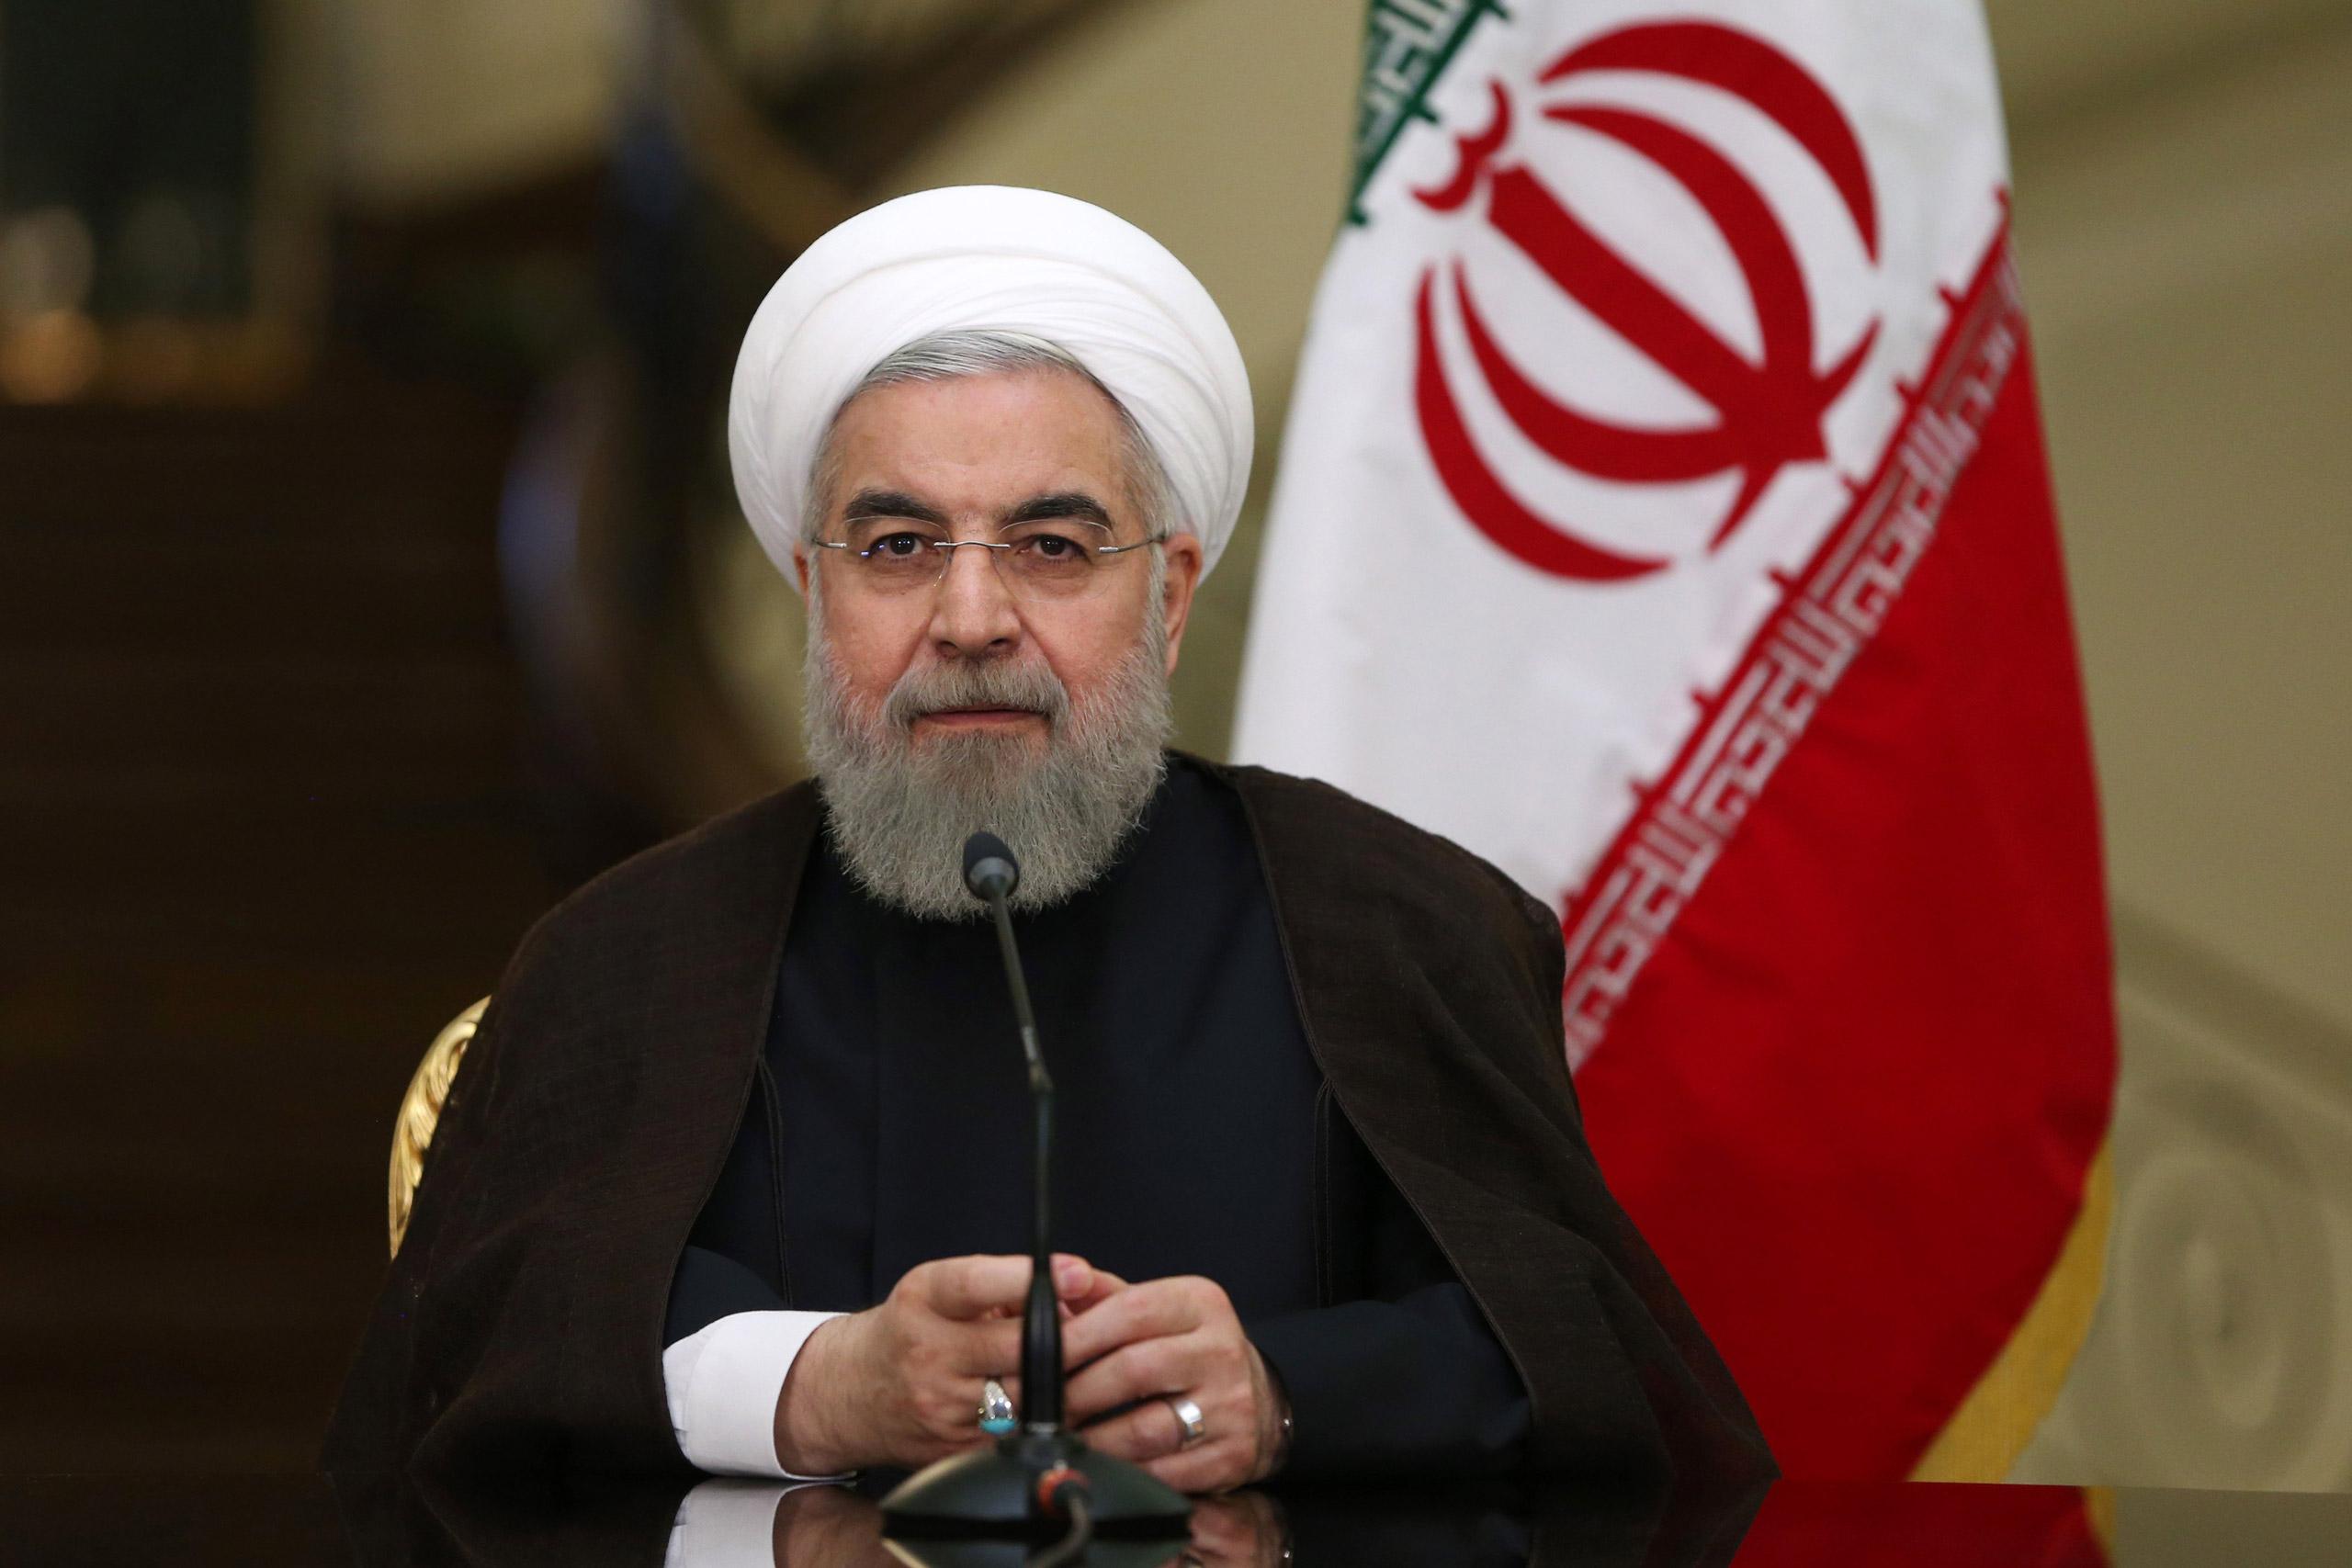 Predsjednik Rohani: Iran će proglasiti treću fazu skraćivanja svojih obaveza pod nuklearnim sporazumom - Avaz